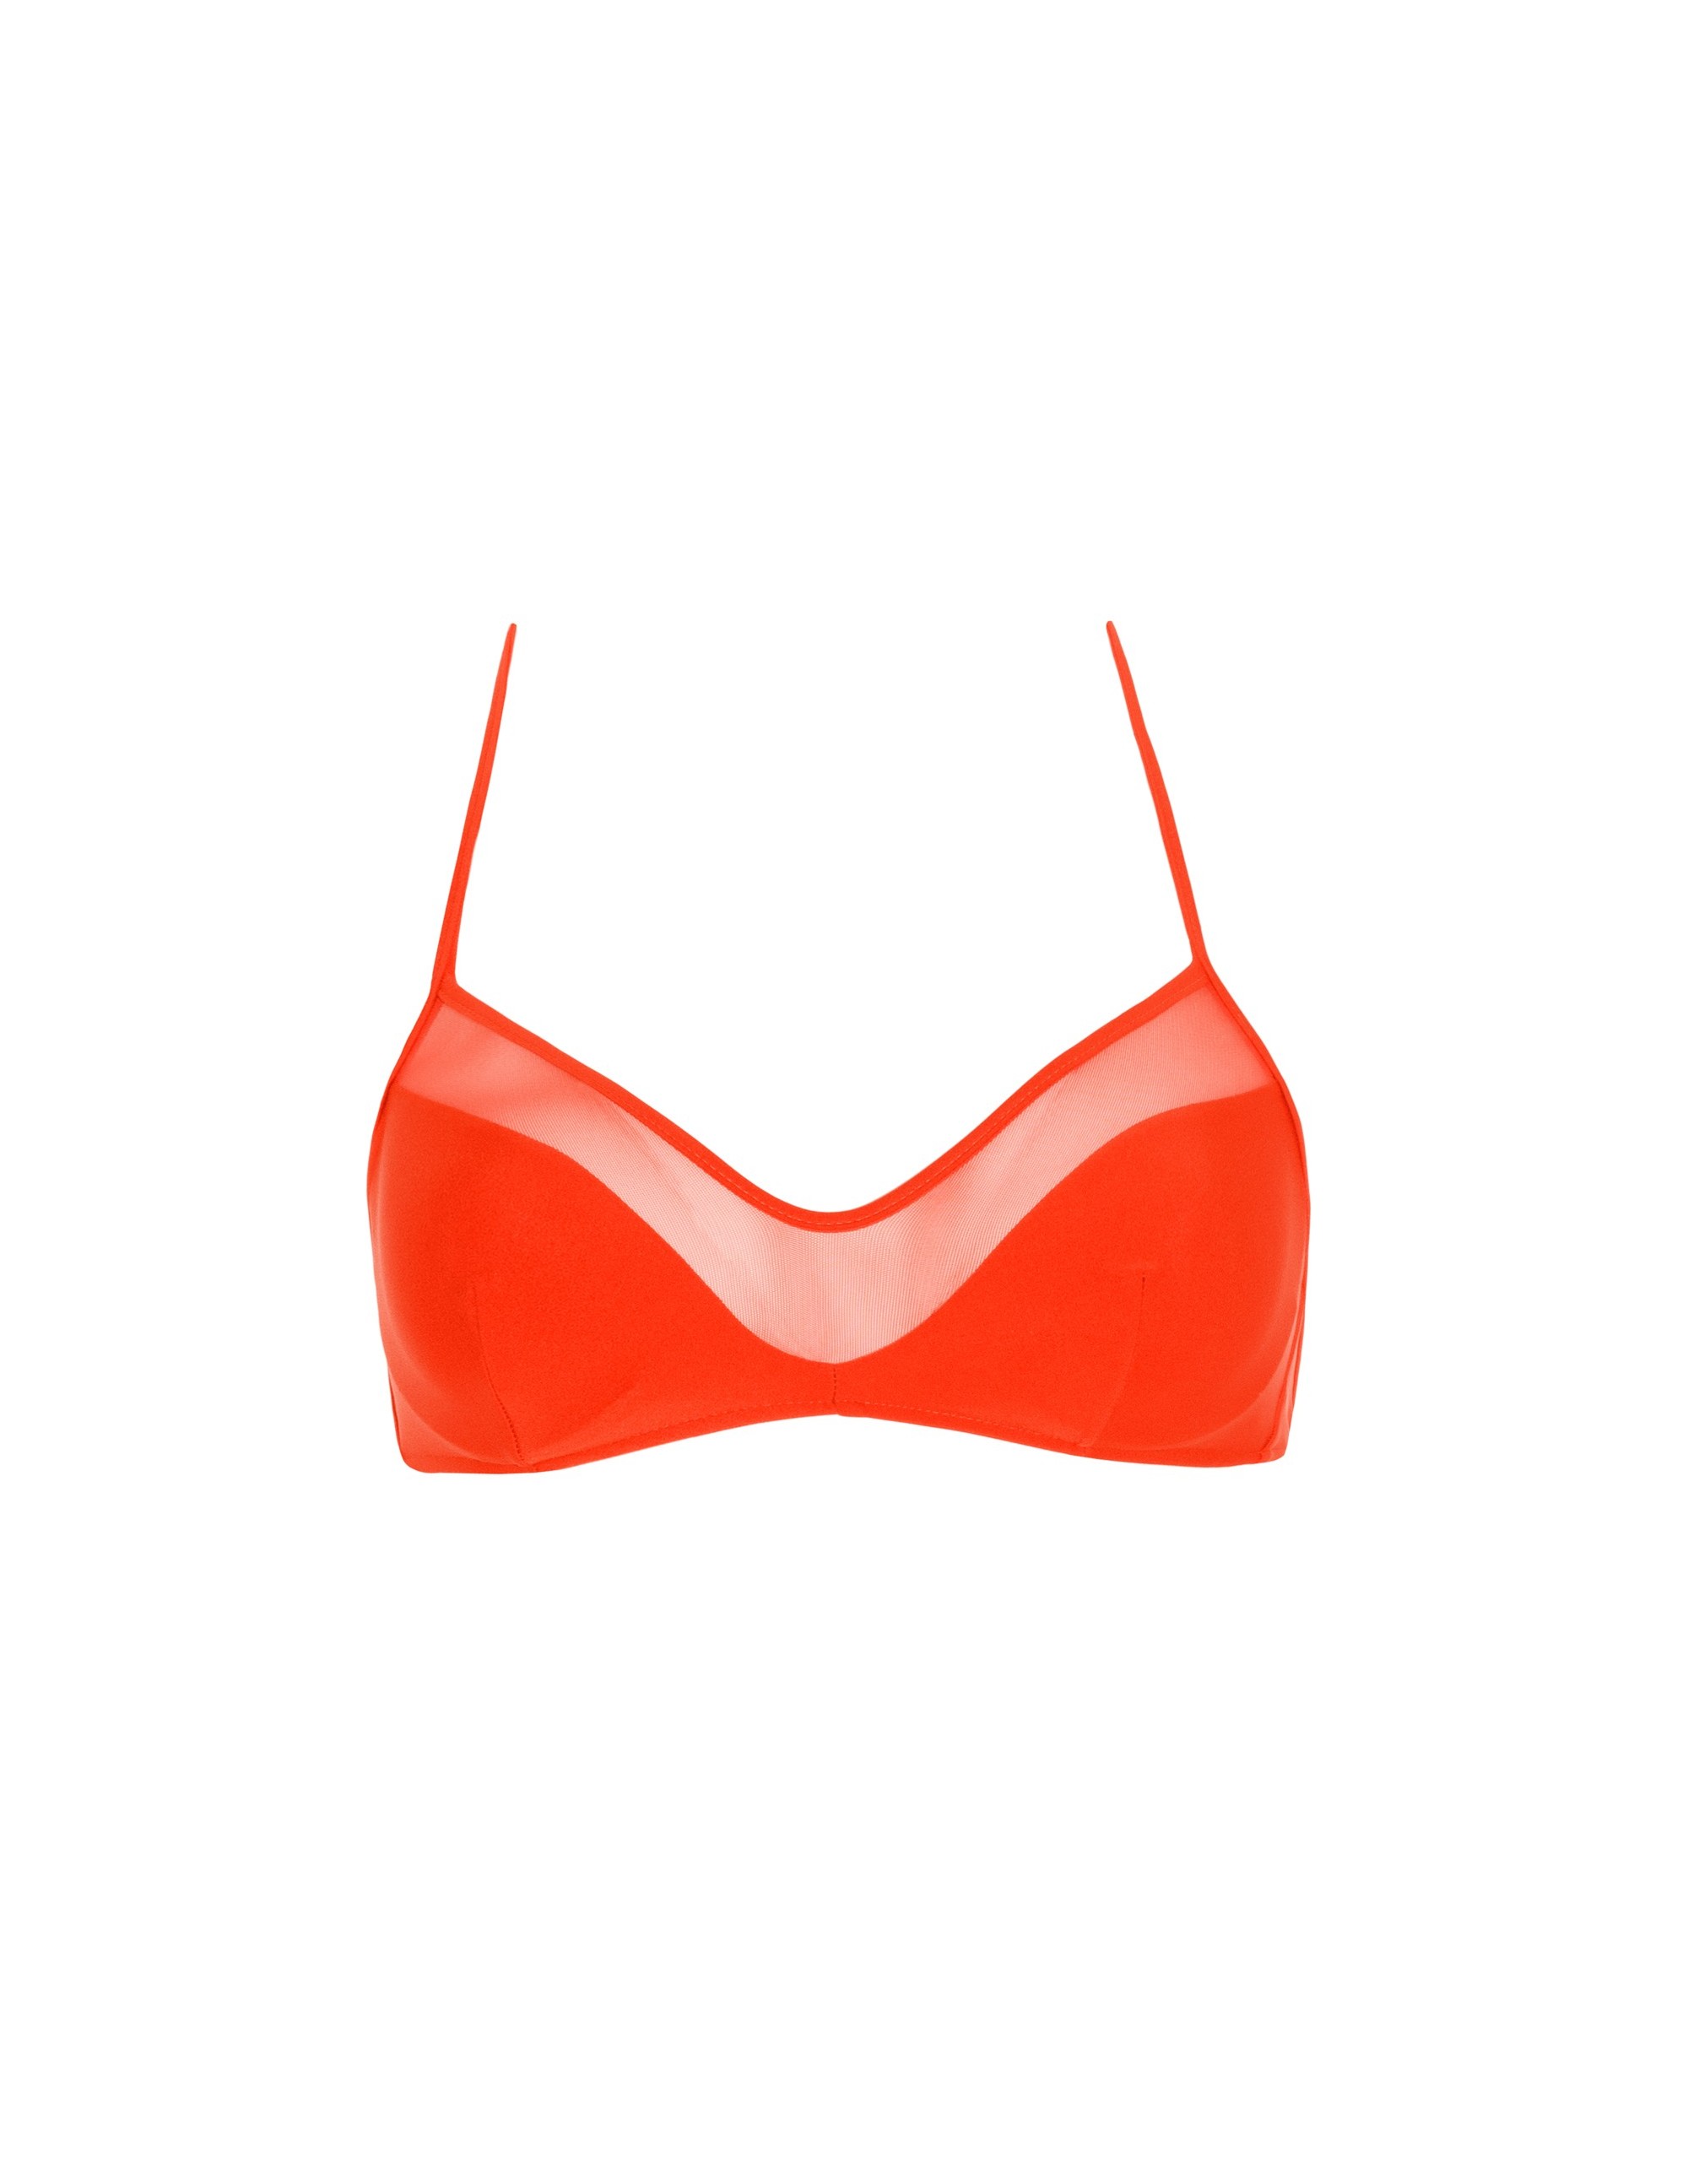 SAONA bikini top - CHARACTER RED